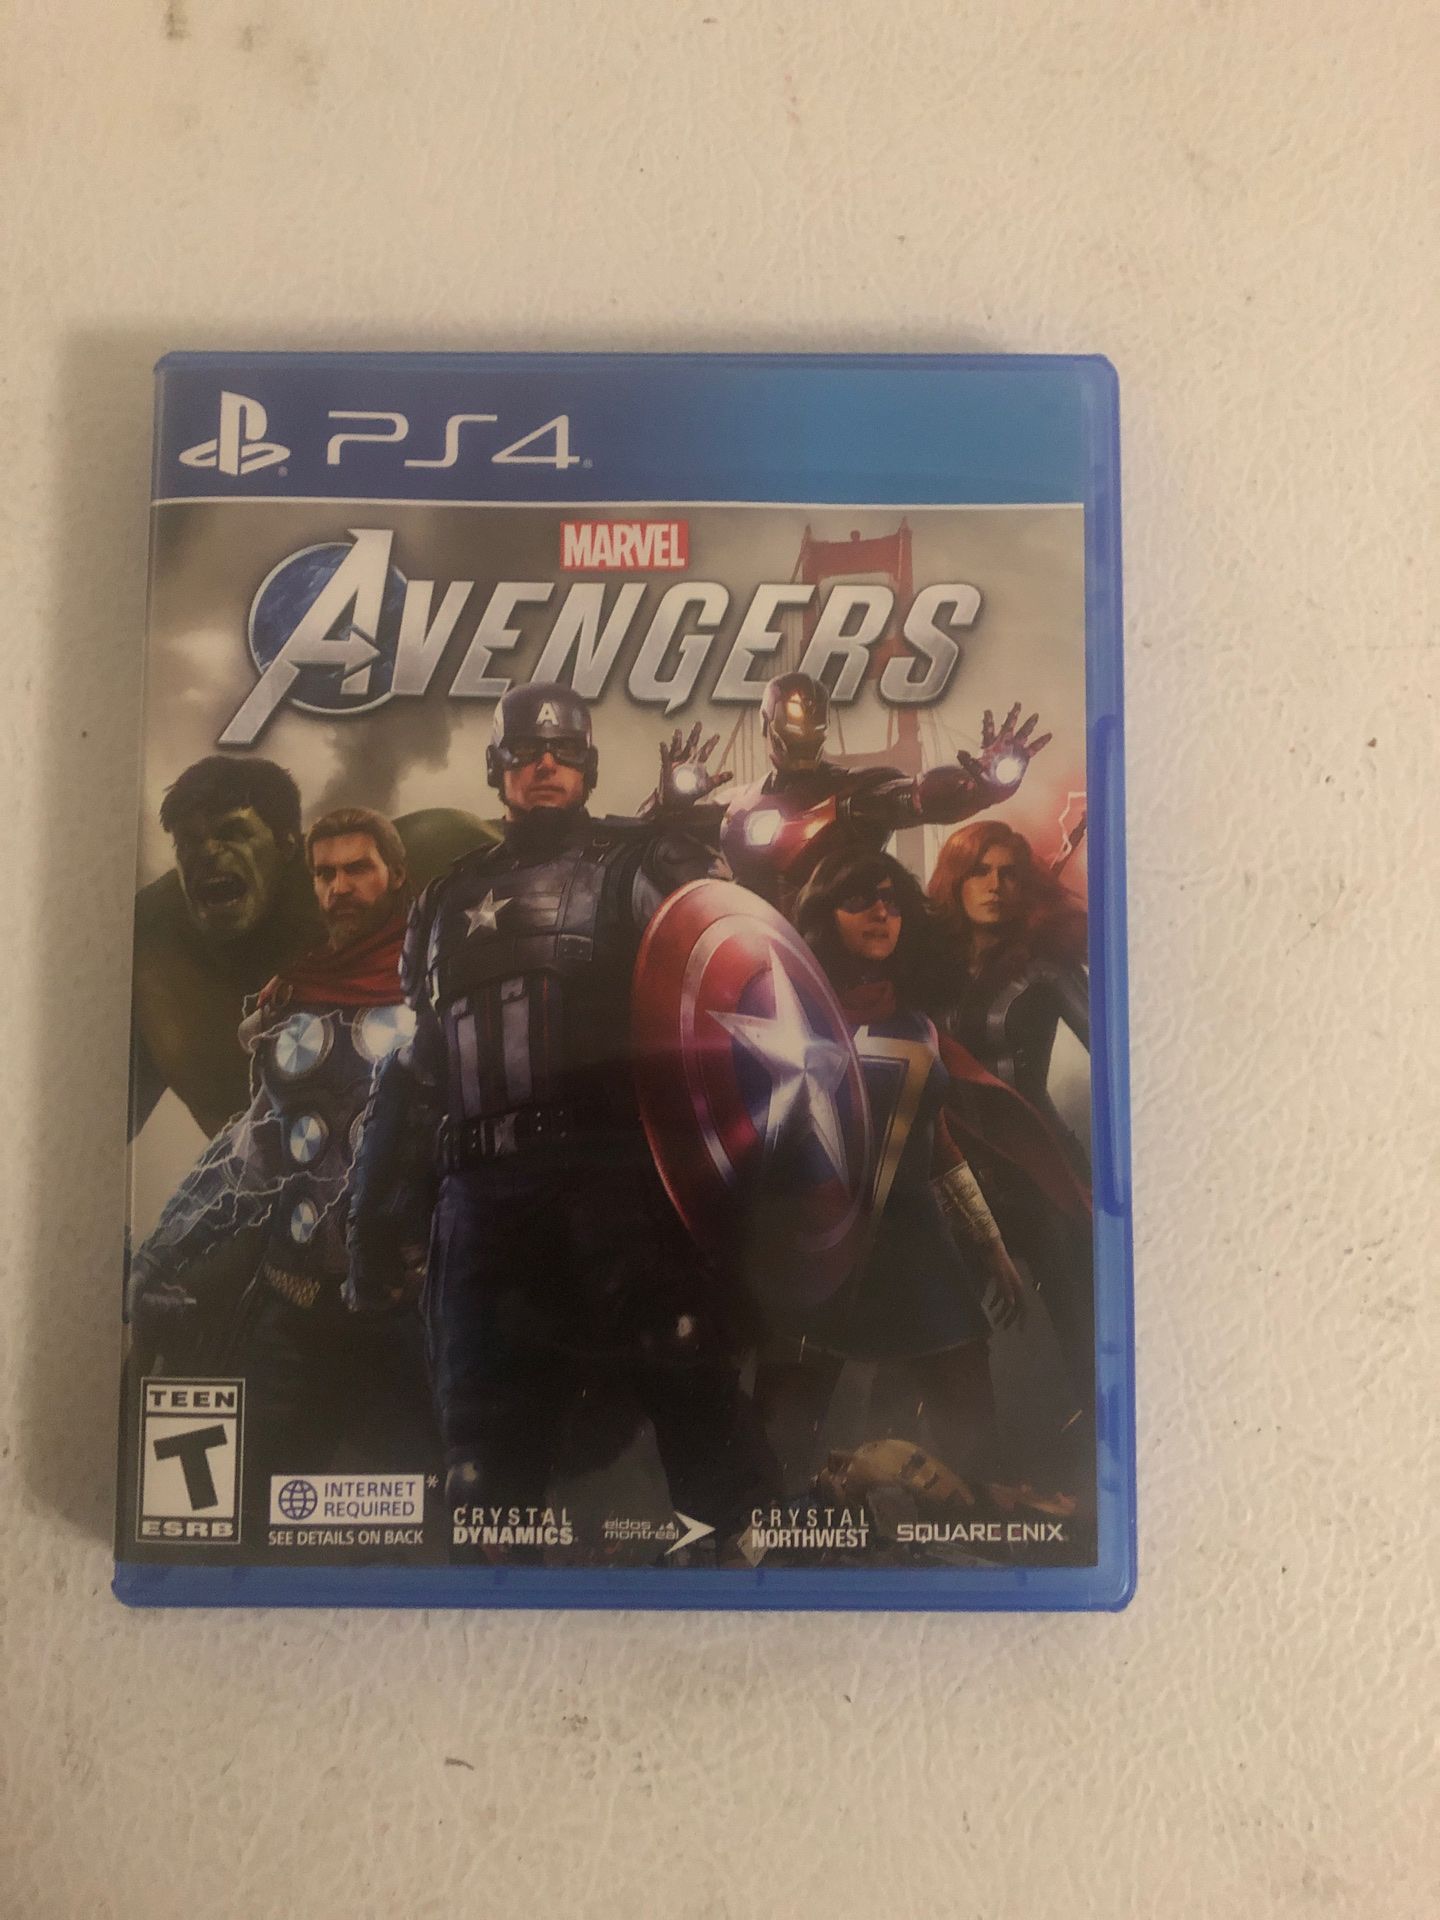 Avengers game